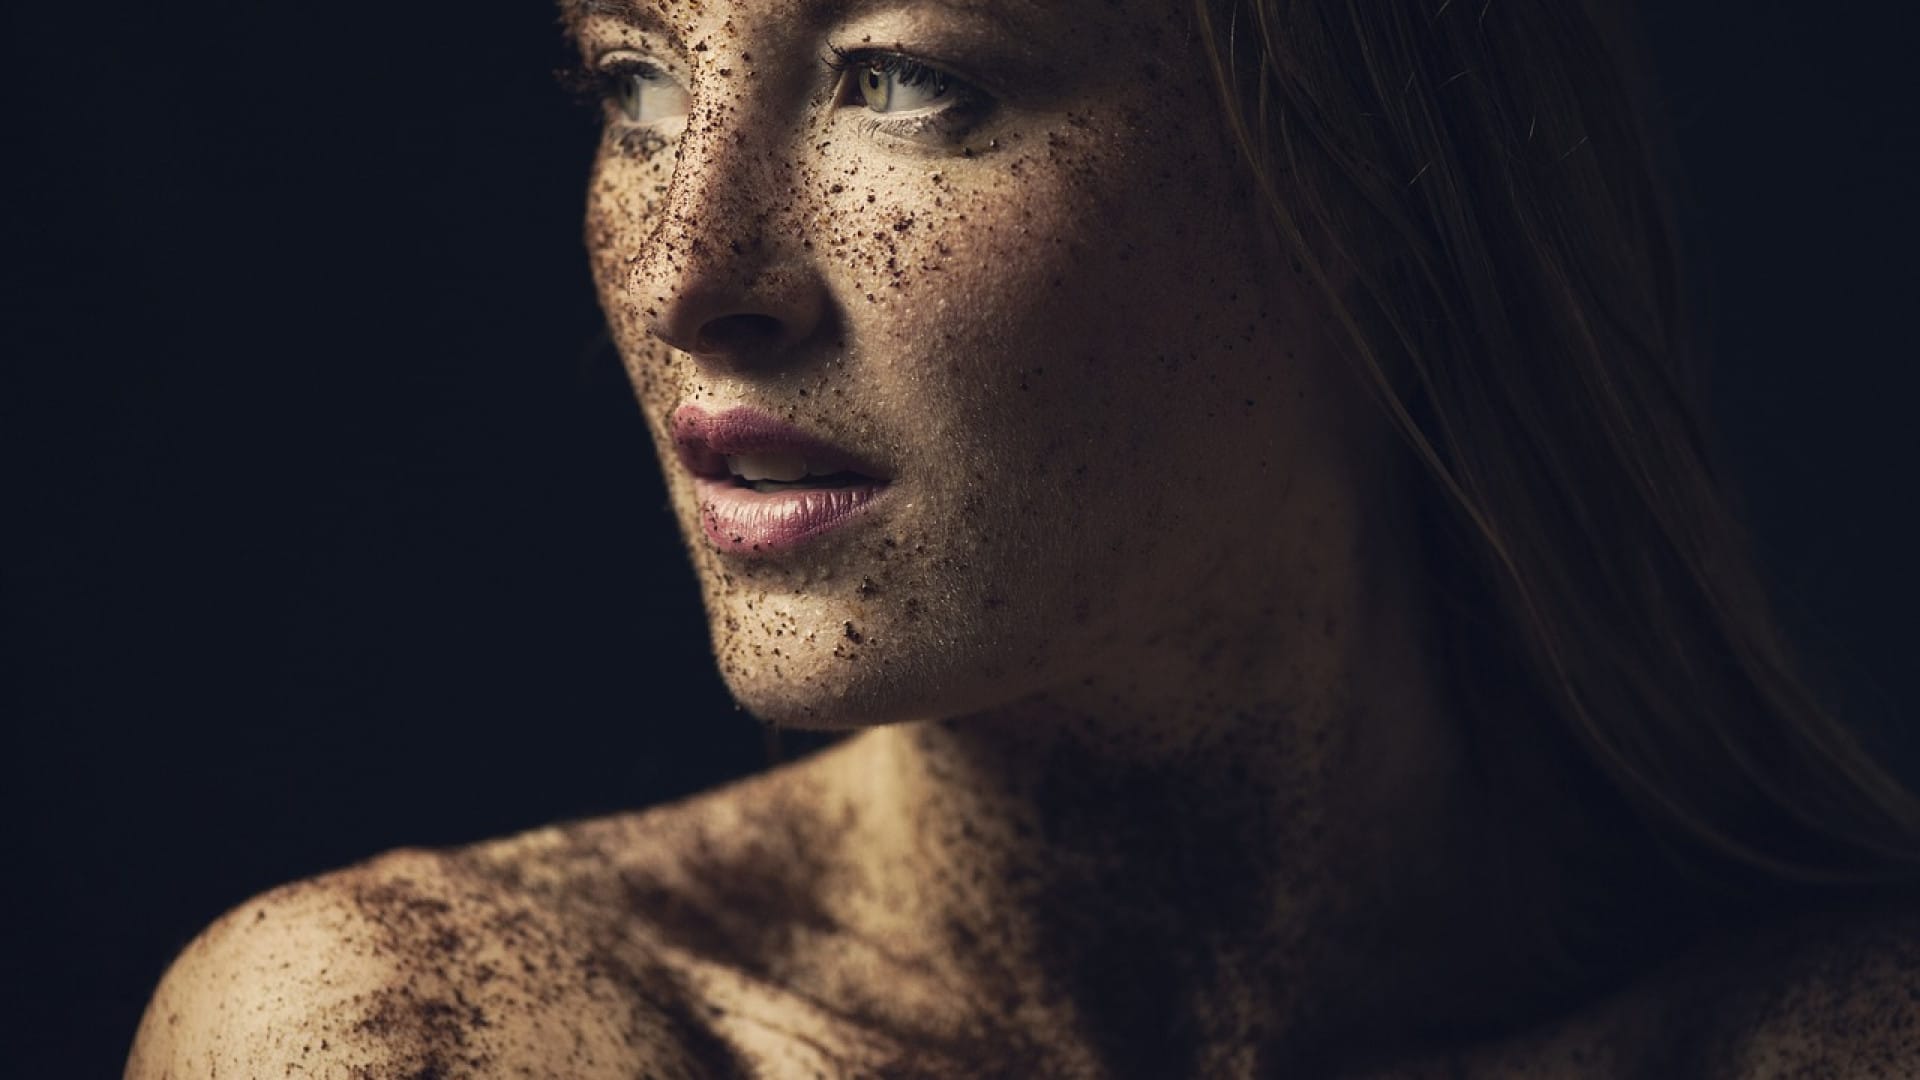 Profil d'une femme avec des taches de rousseur regardant au loin sur un fond sombre, sa peau douce s'éclairant doucement en contraste.